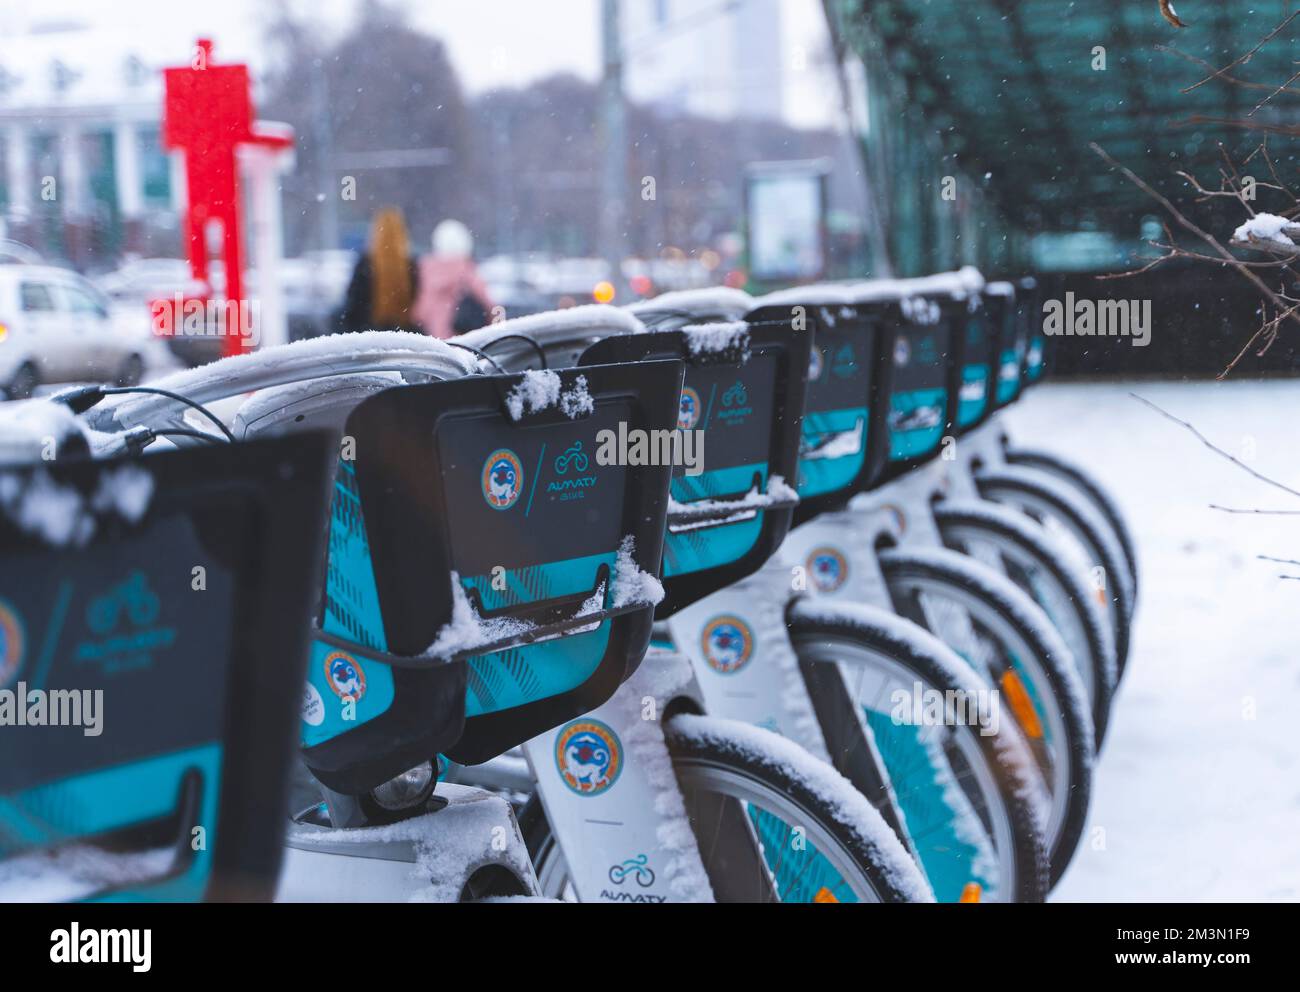 Almaty, Kazakhstan - 09 décembre 2022 - Location de vélos de ville à la station d'accueil couverte de neige Banque D'Images